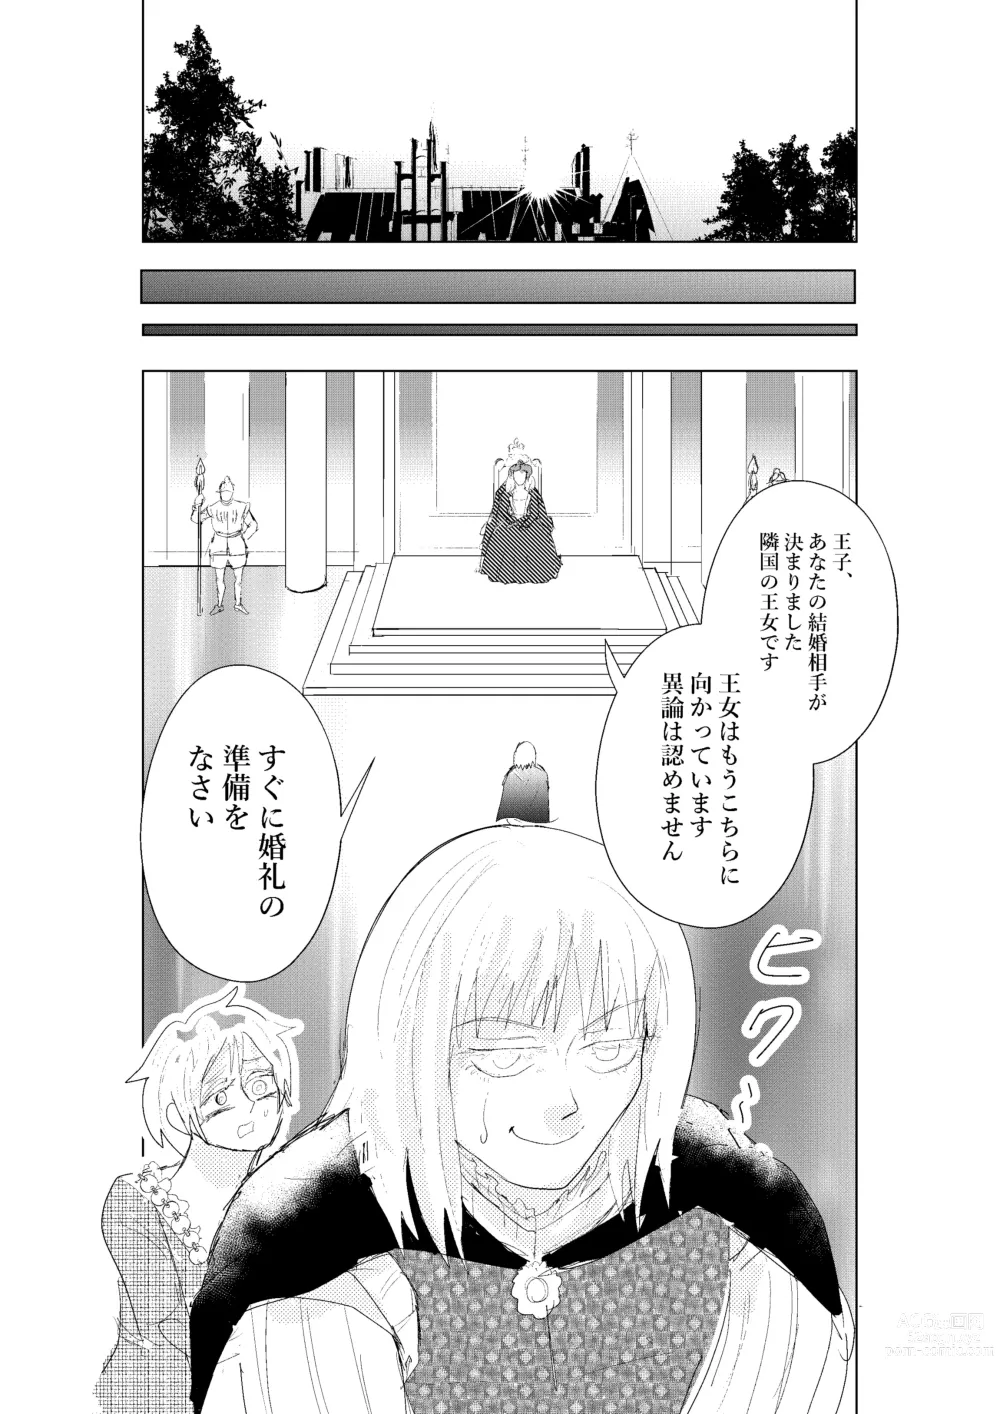 Page 26 of doujinshi Hontou ni Hidoi! Ningyo Hime